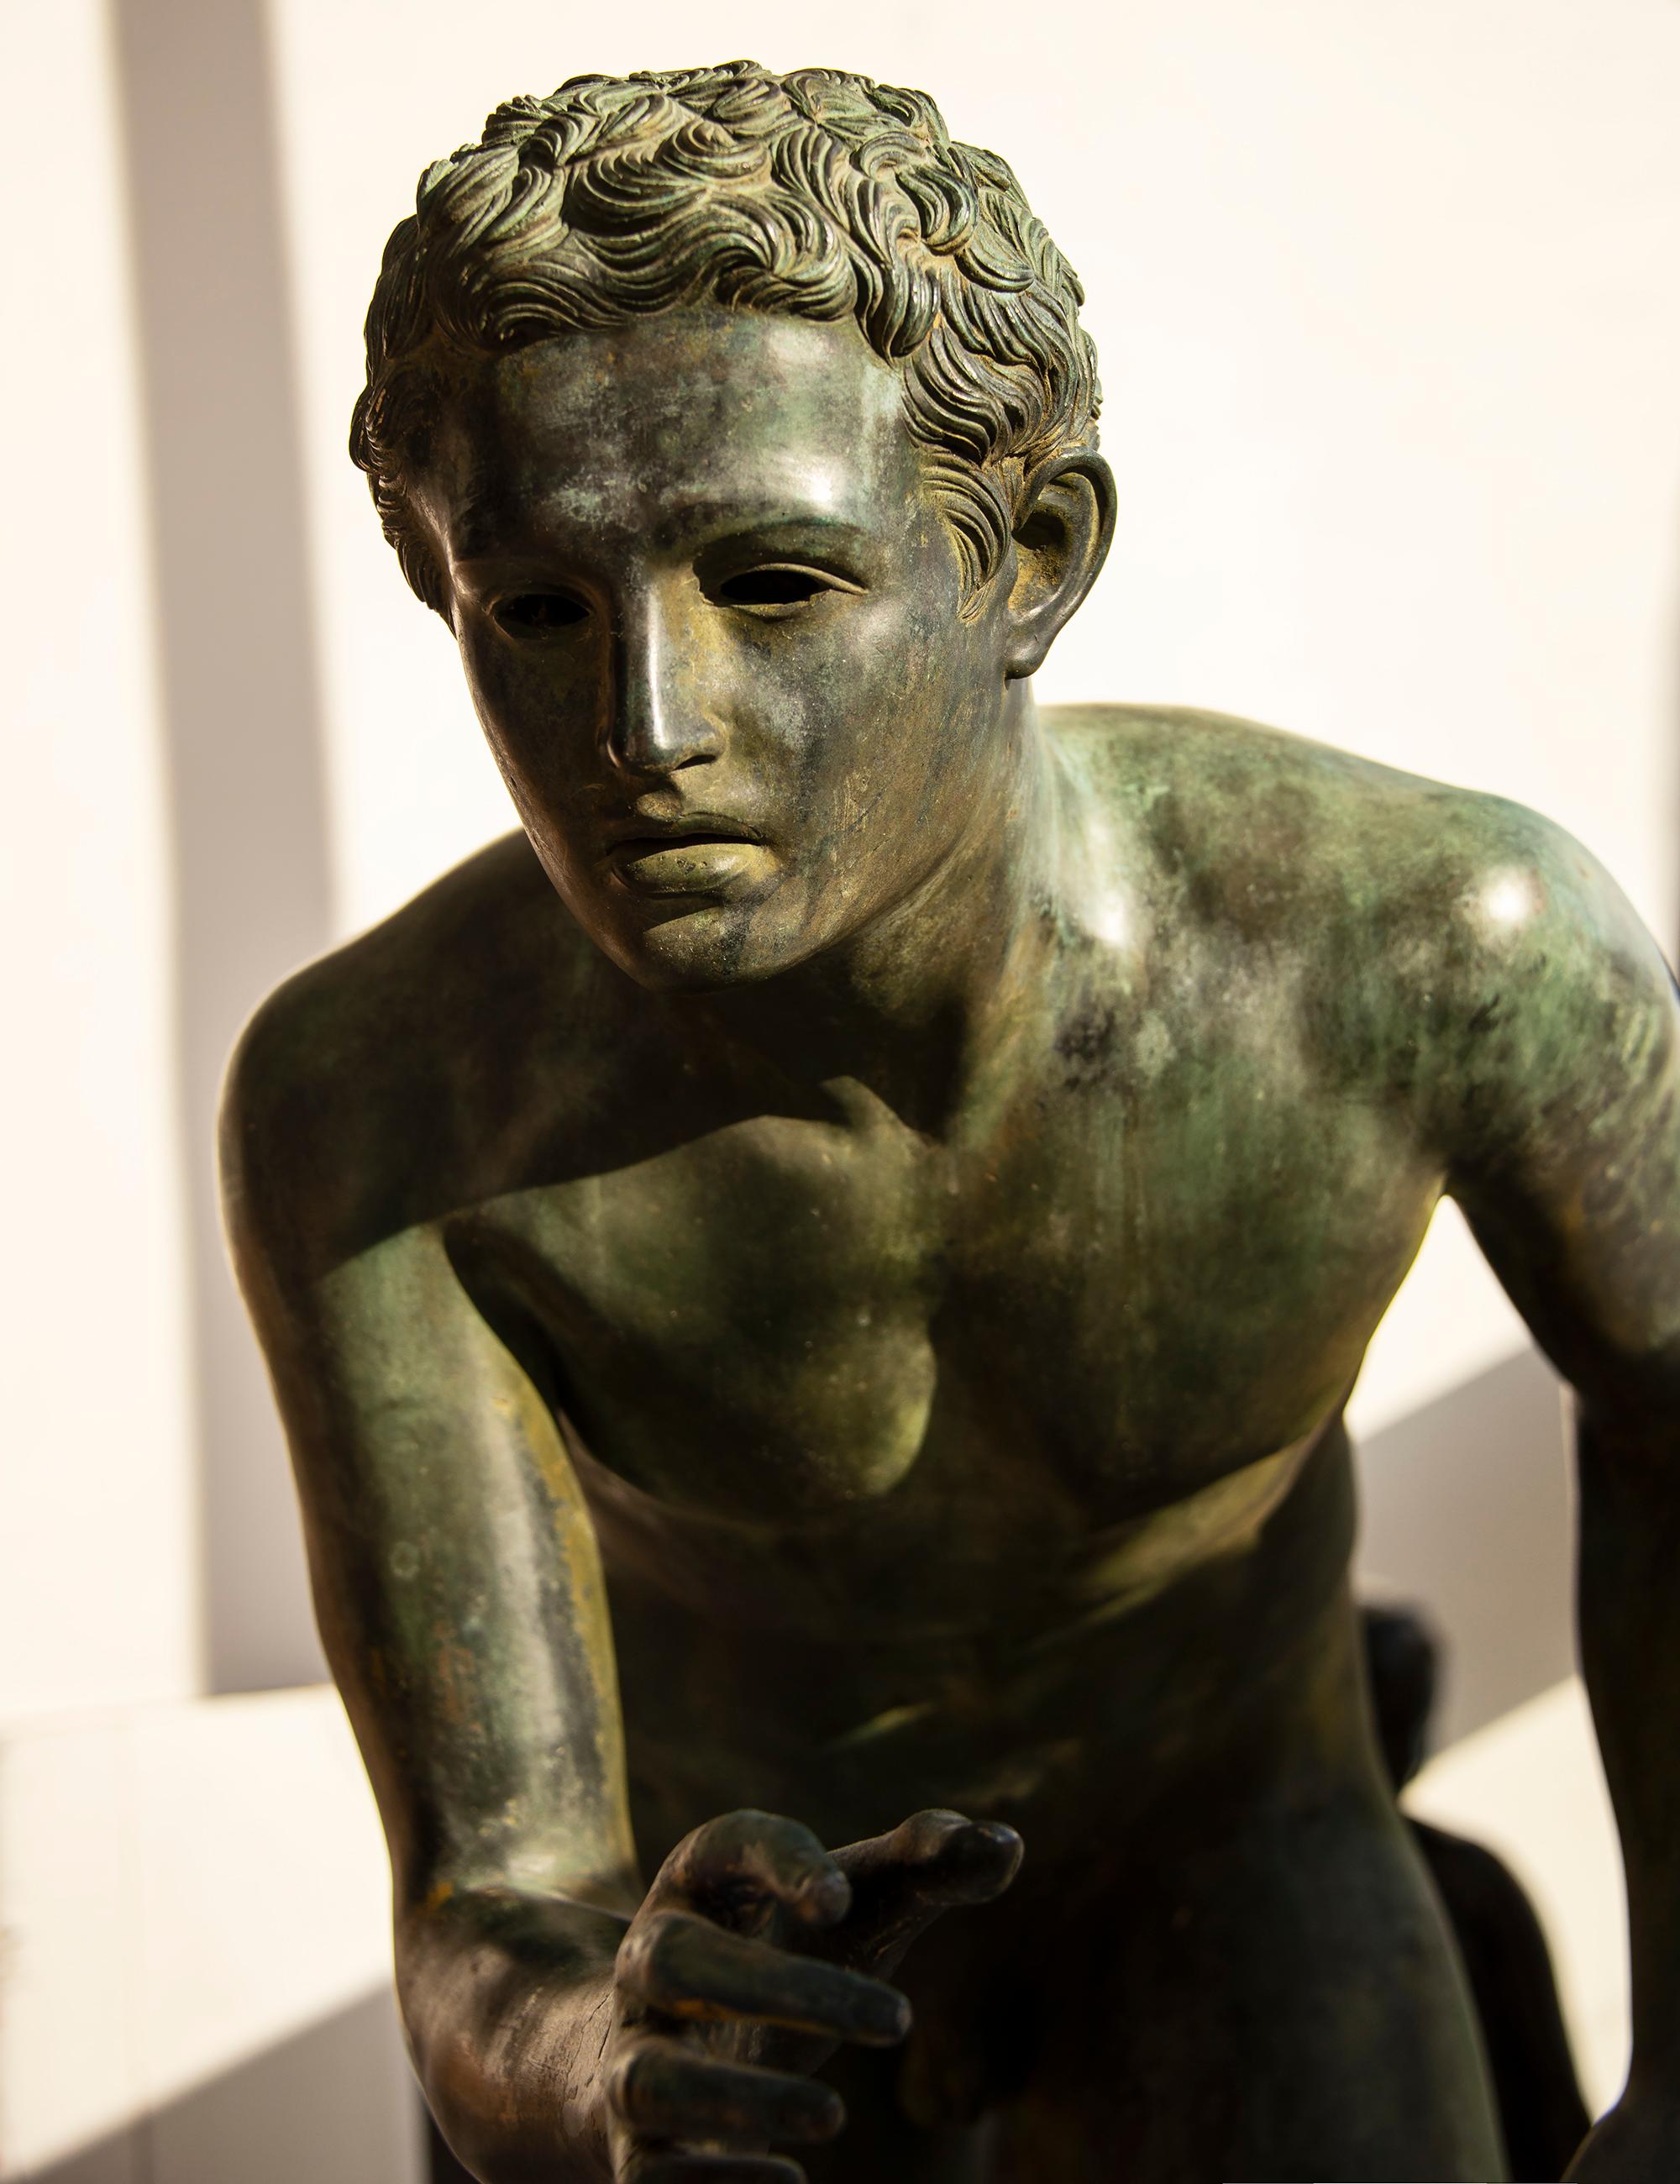 Männlicher Akt-Läufer aus Bronze, patiniert, klassischer Nach der Antike (Gold), Nude Sculpture, von Unknown